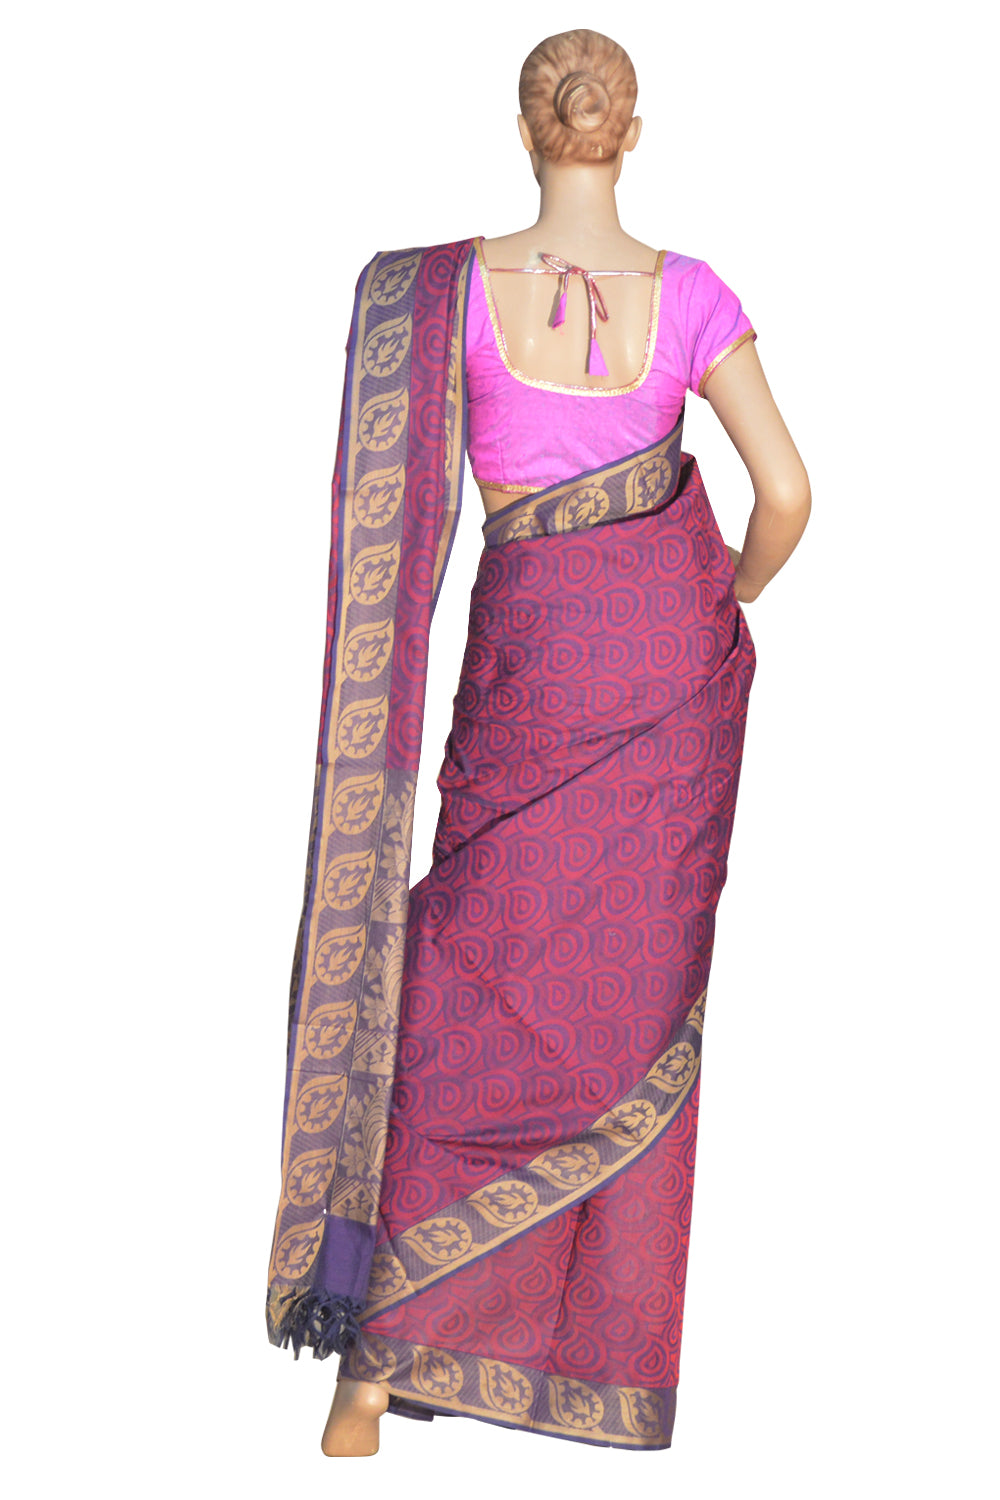 Original South Cotton Purple Saree With Leaf Art Design on Pallu